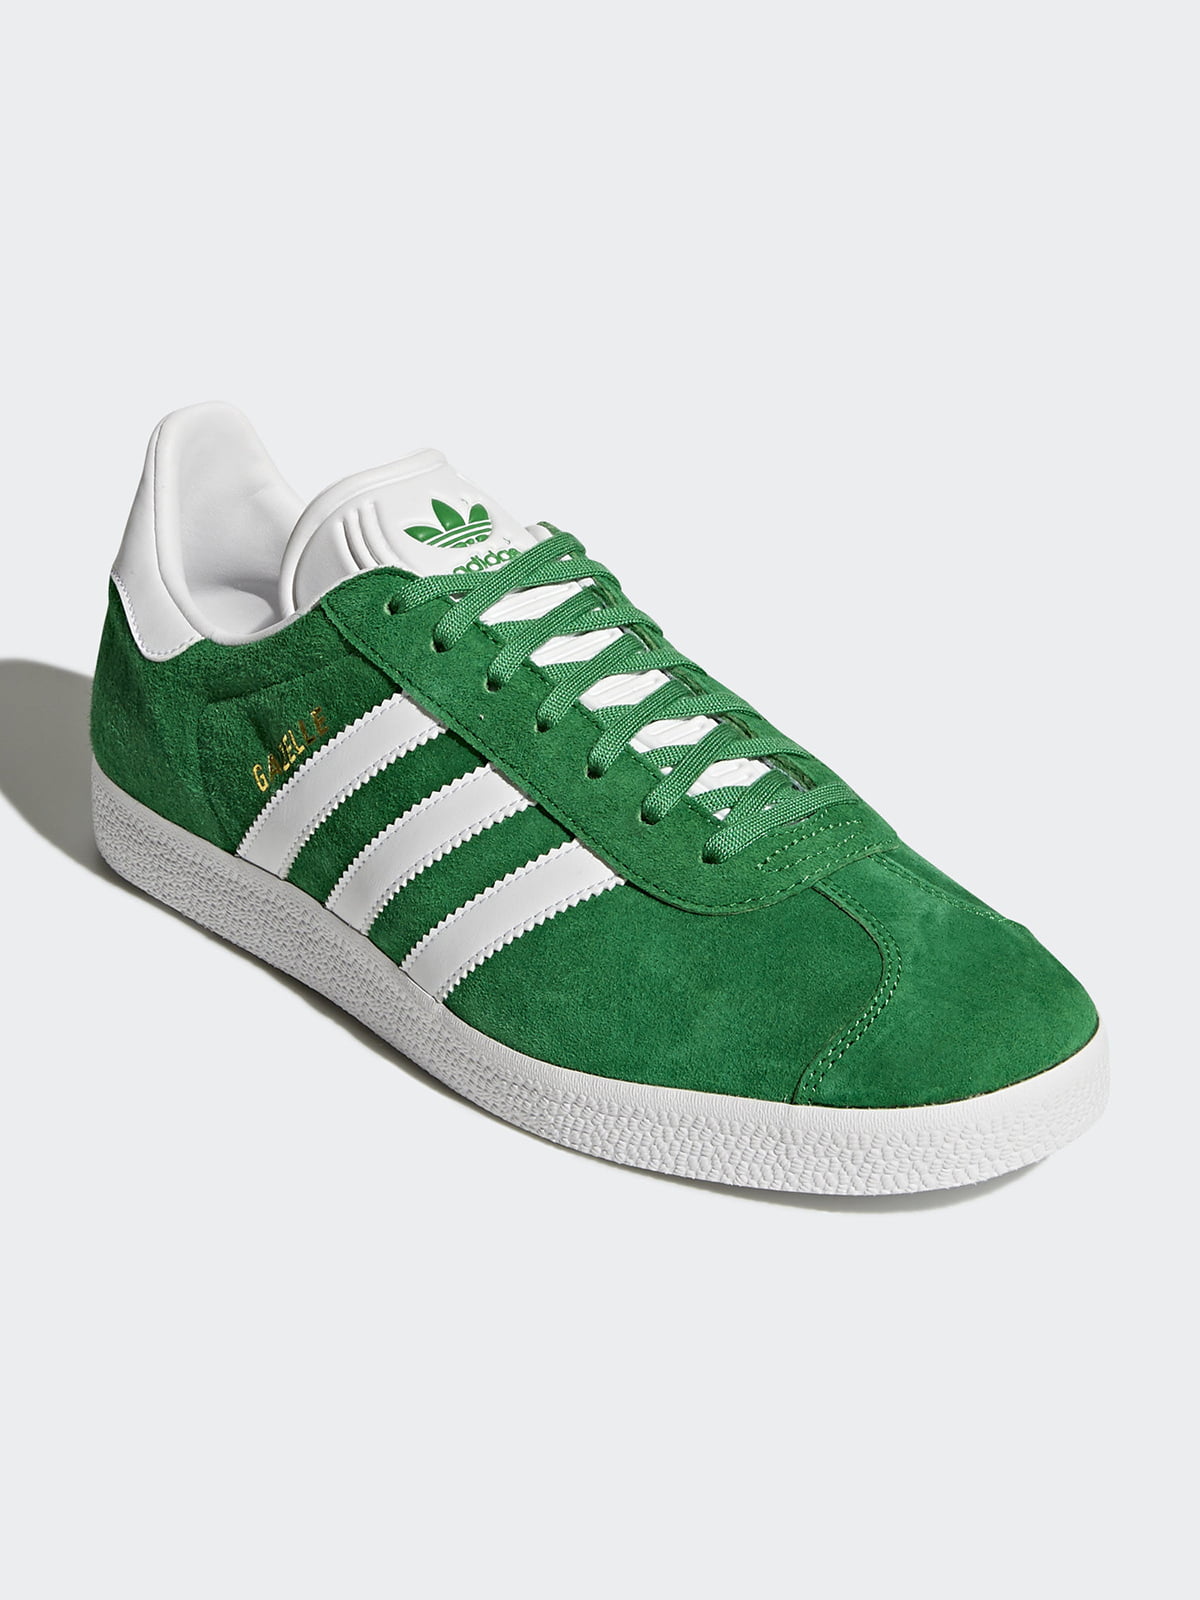 Кеды адидас зеленые. Кроссовки adidas Gazelle Green. Adidas Gazelle зеленые. Adidas Gazelle Green Original. Adidas кеды Gazelle зеленый.